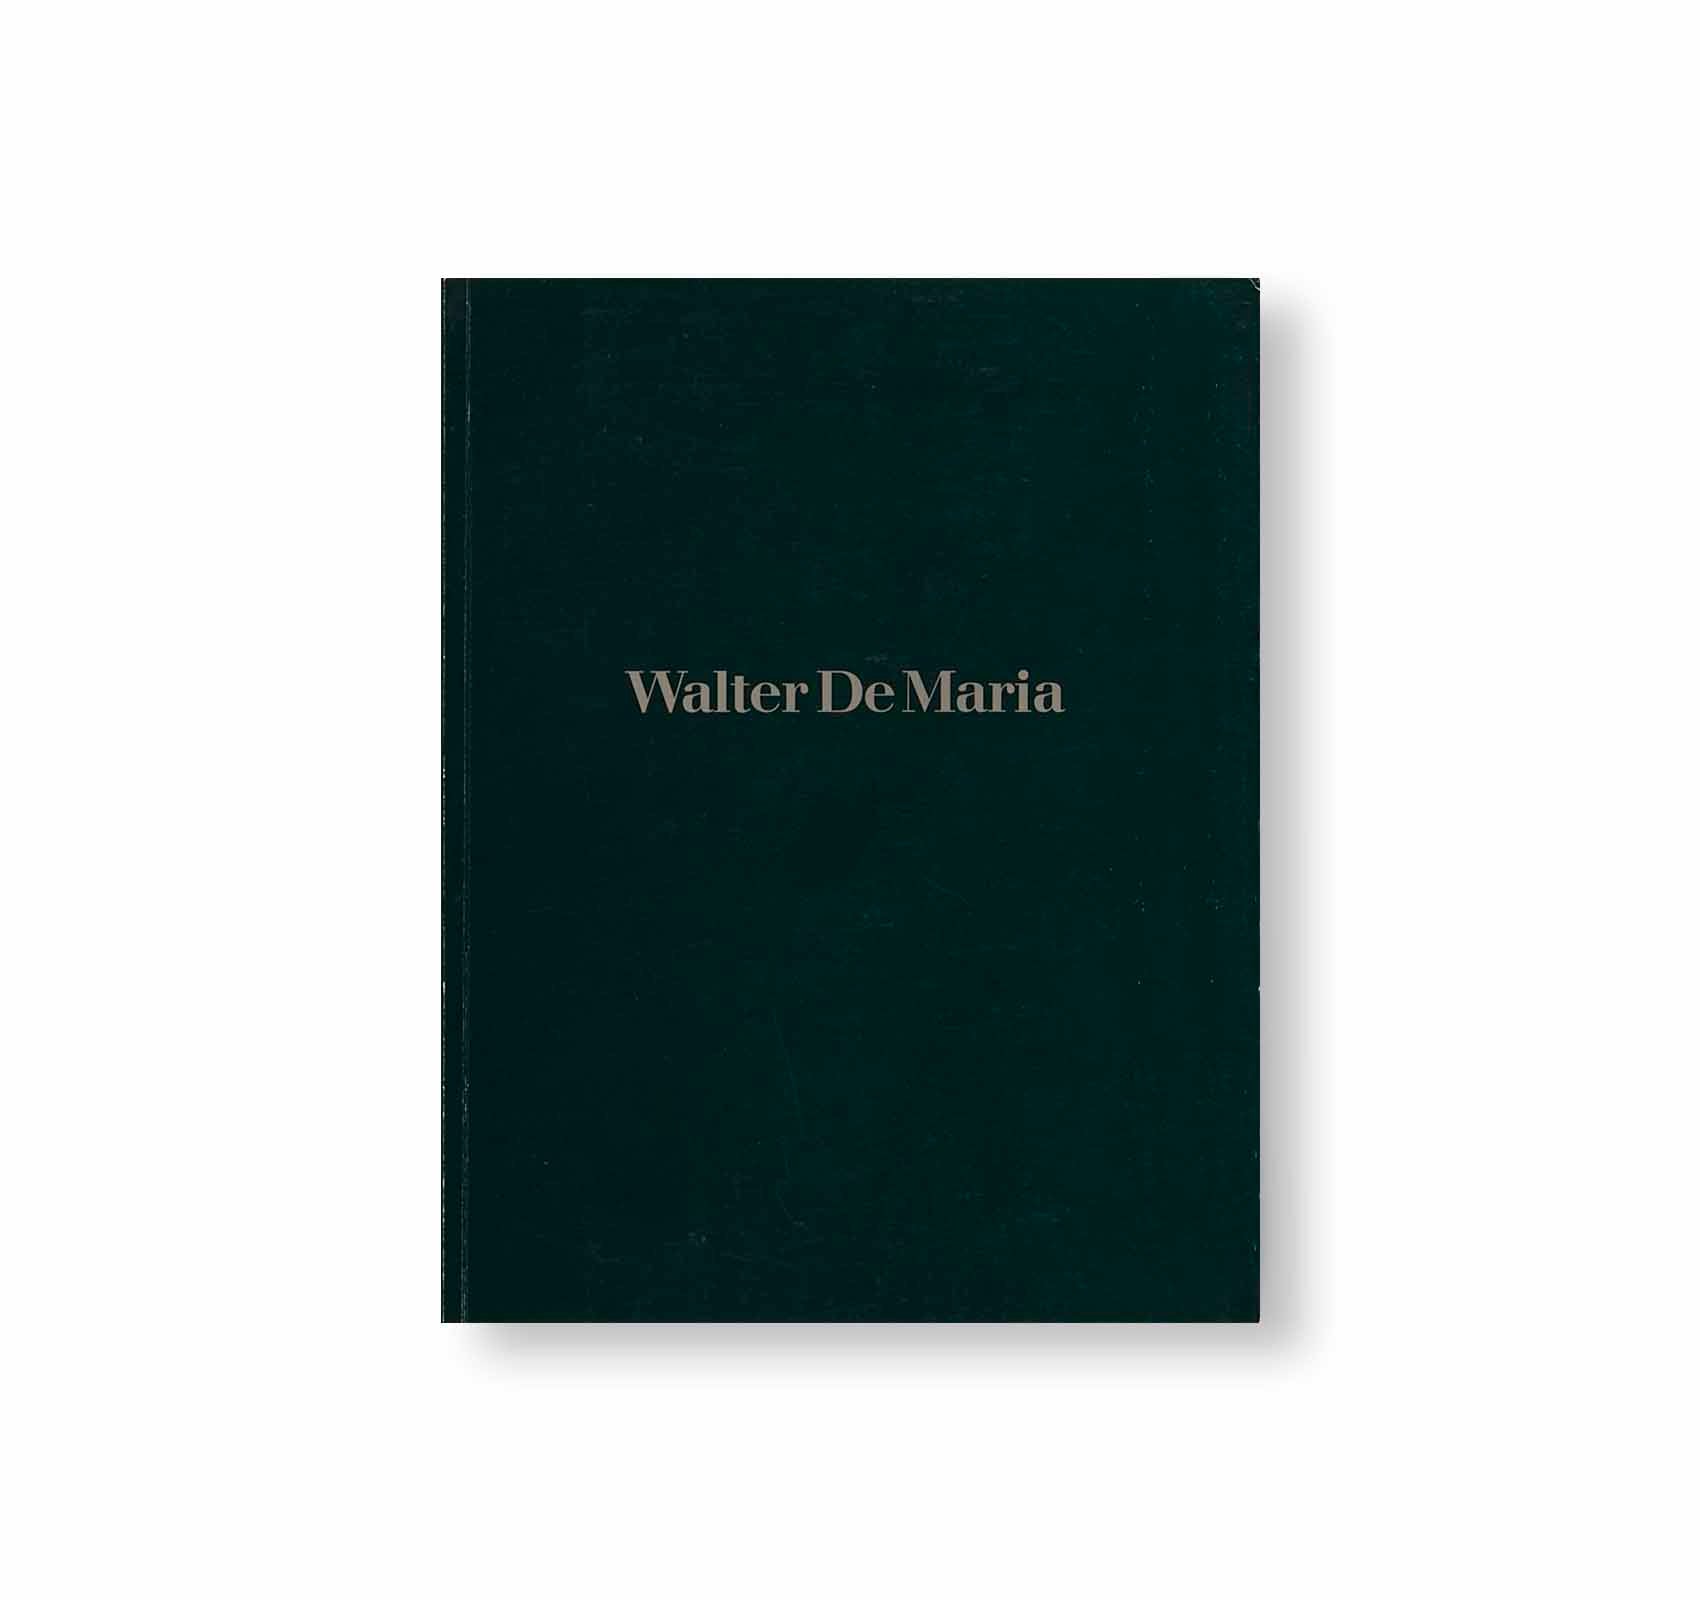 WALTER DE MARIA by Walter De Maria